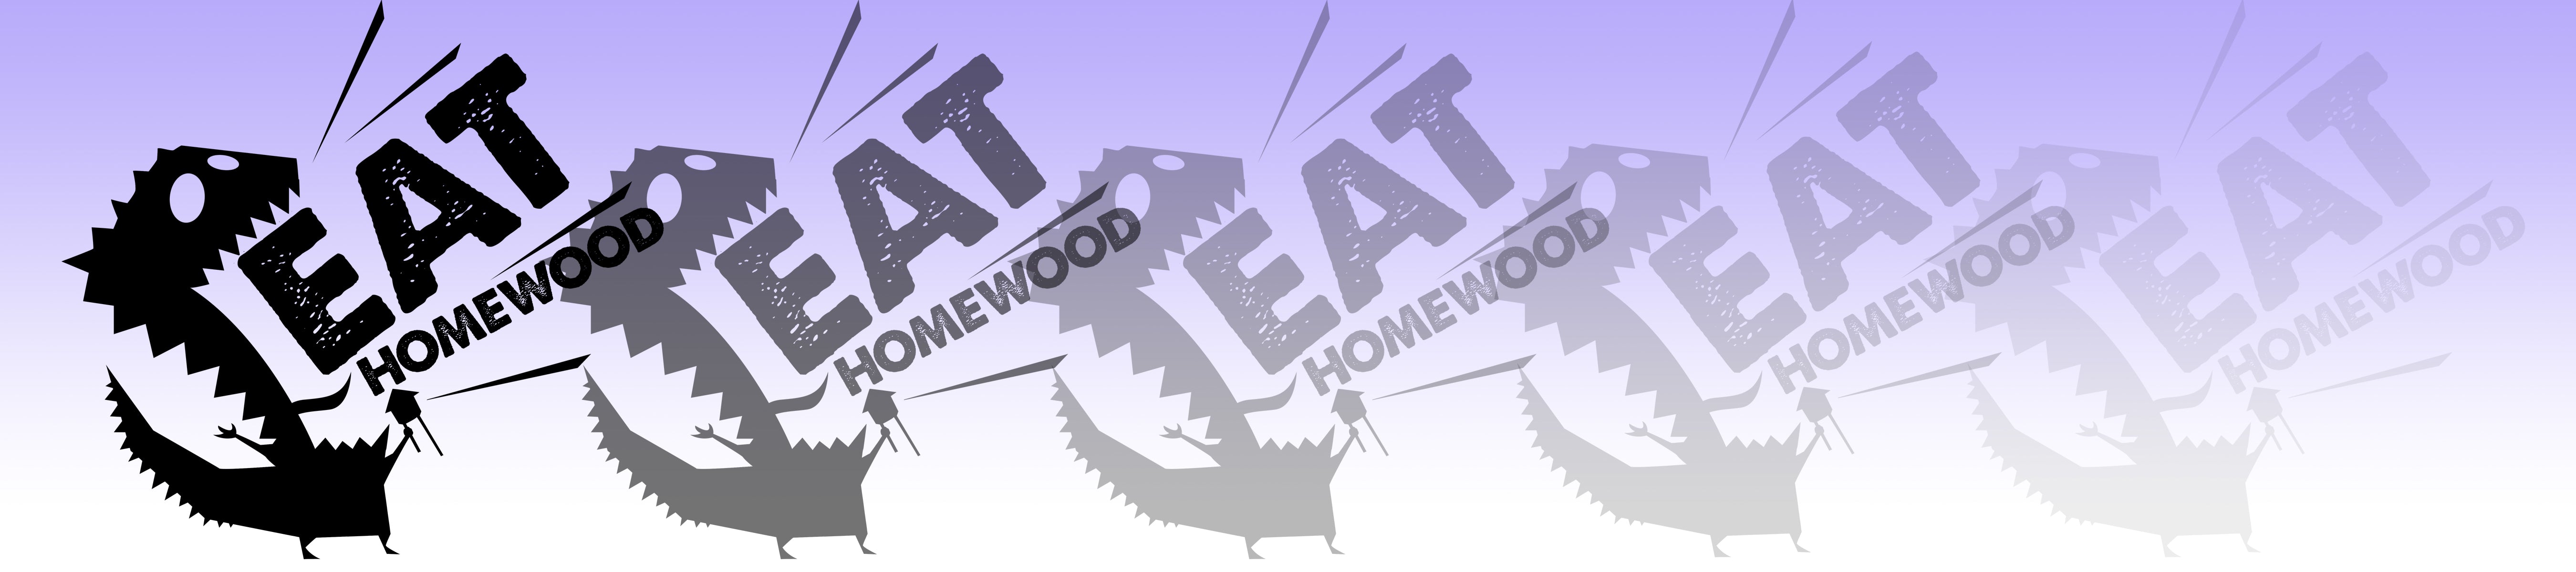 Eat Homewood